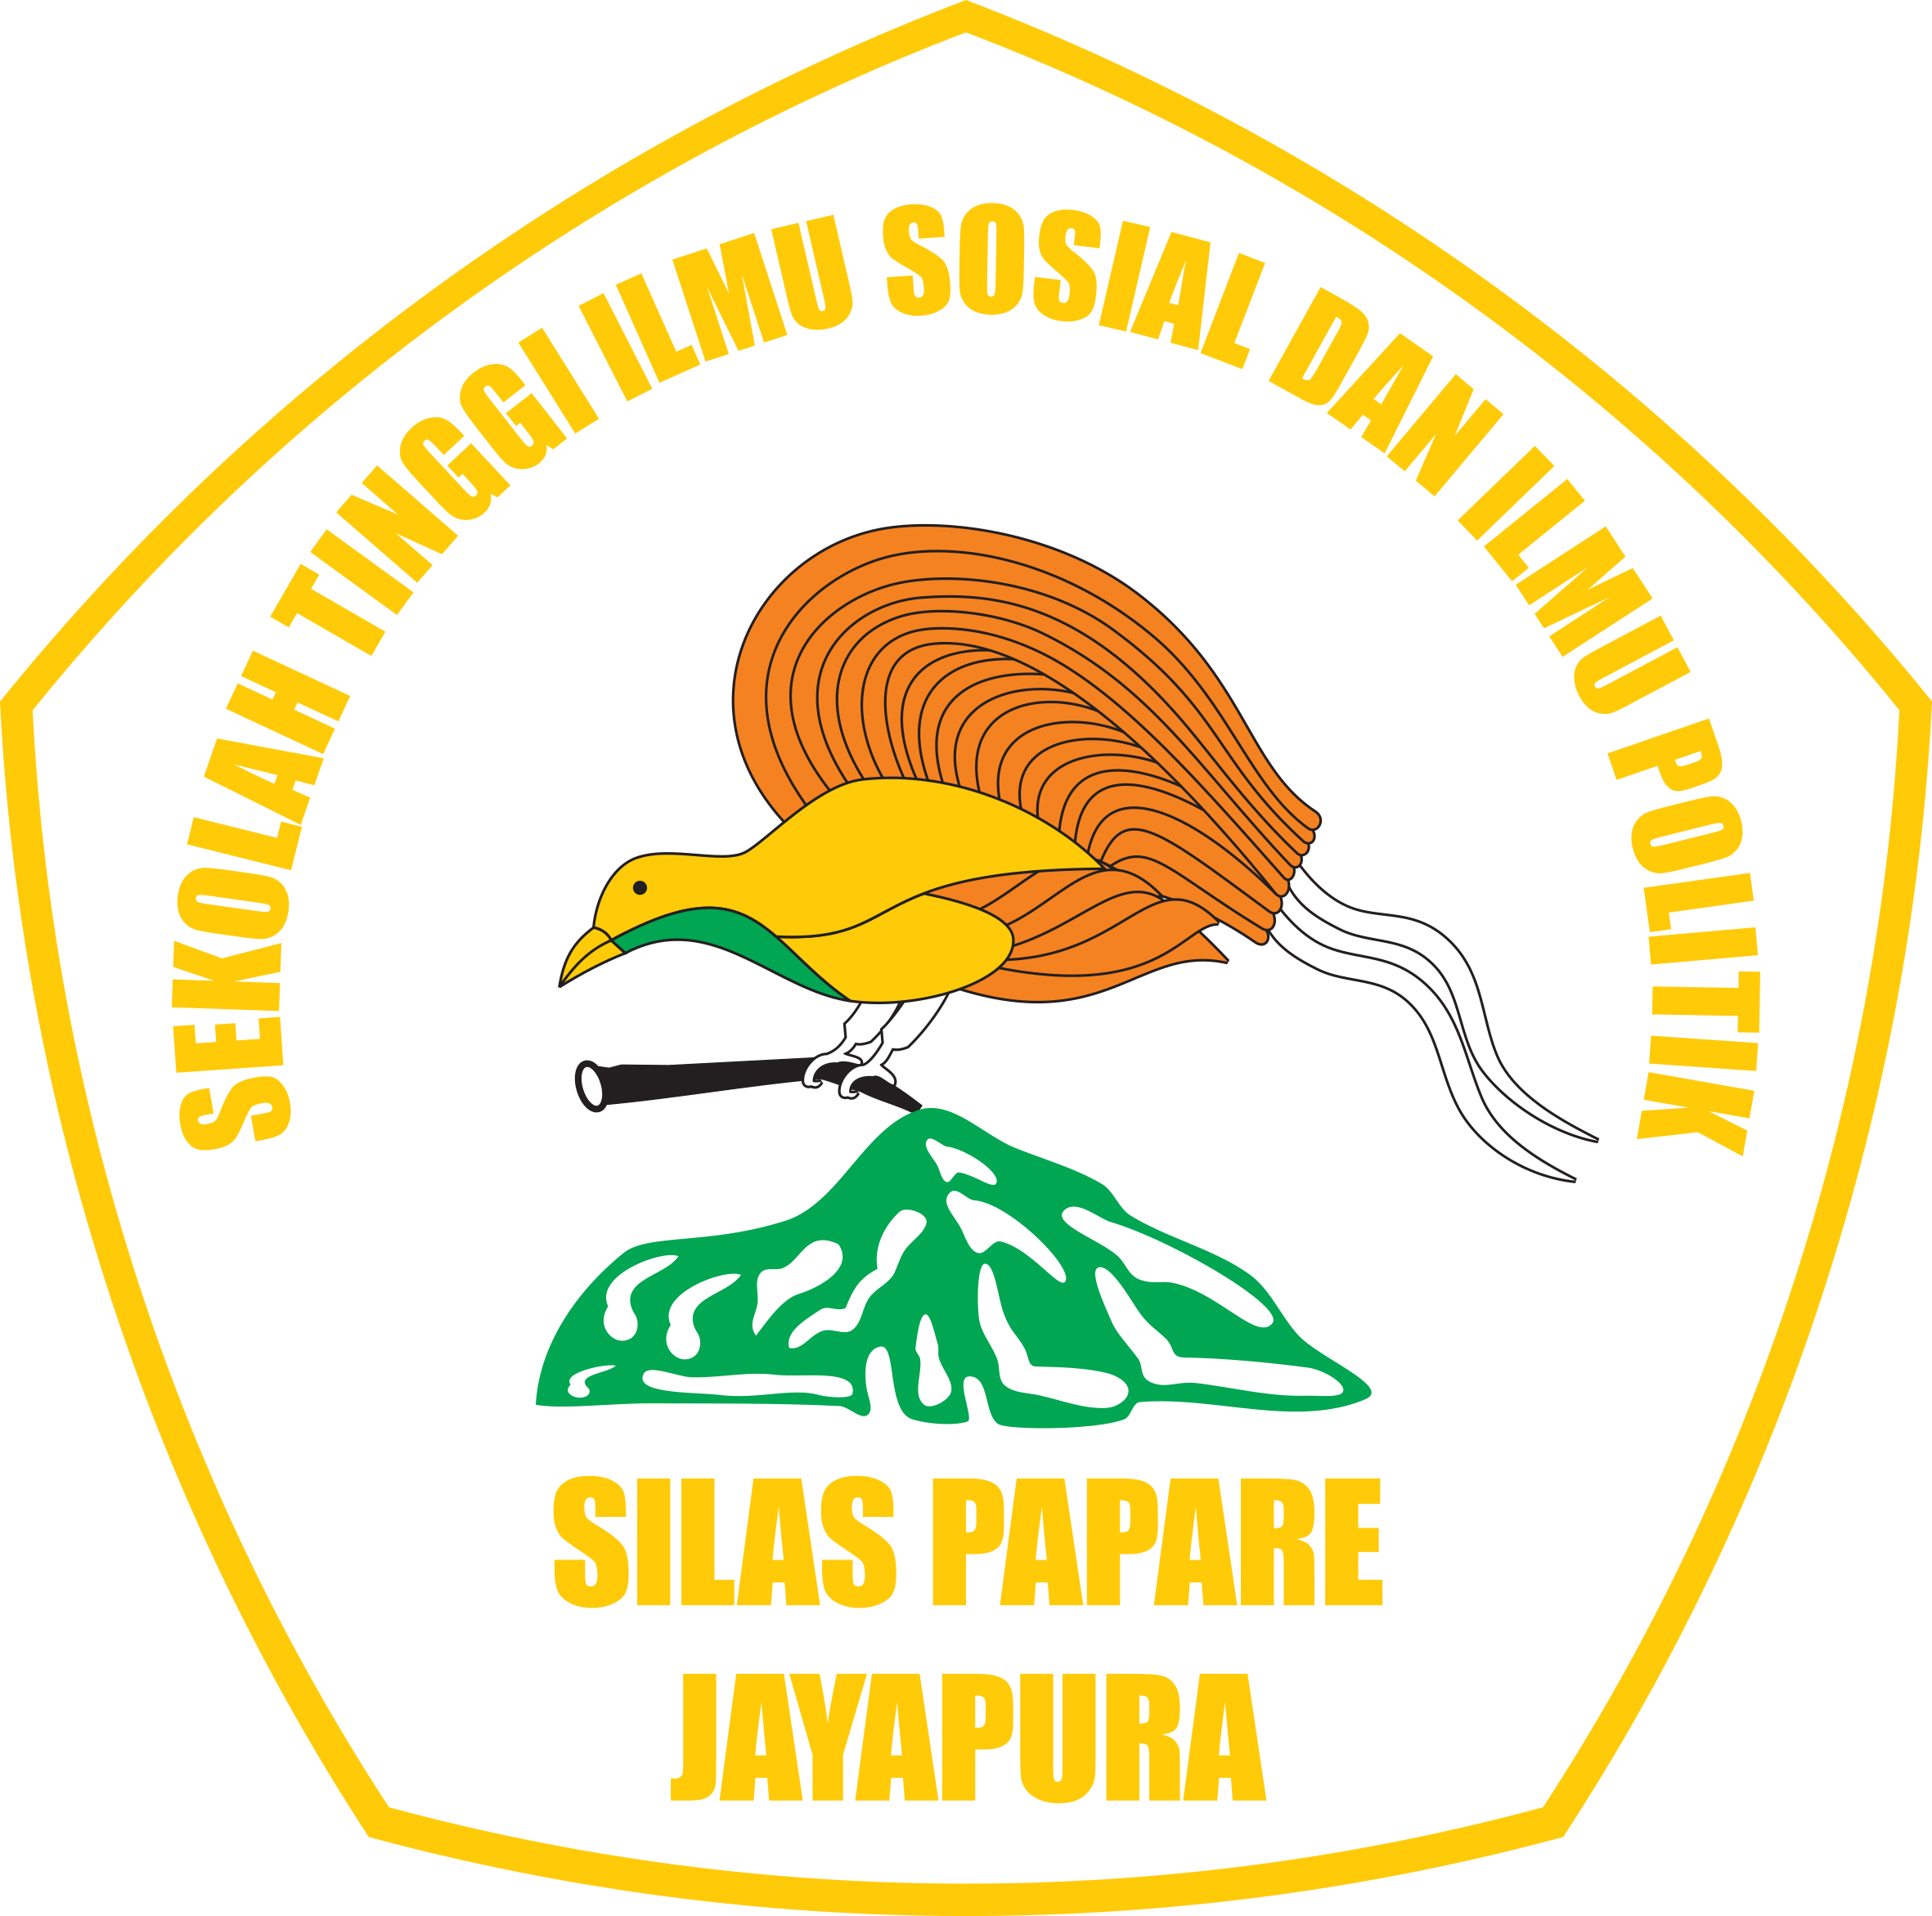 STISIPOL Silas Papare Jayapura